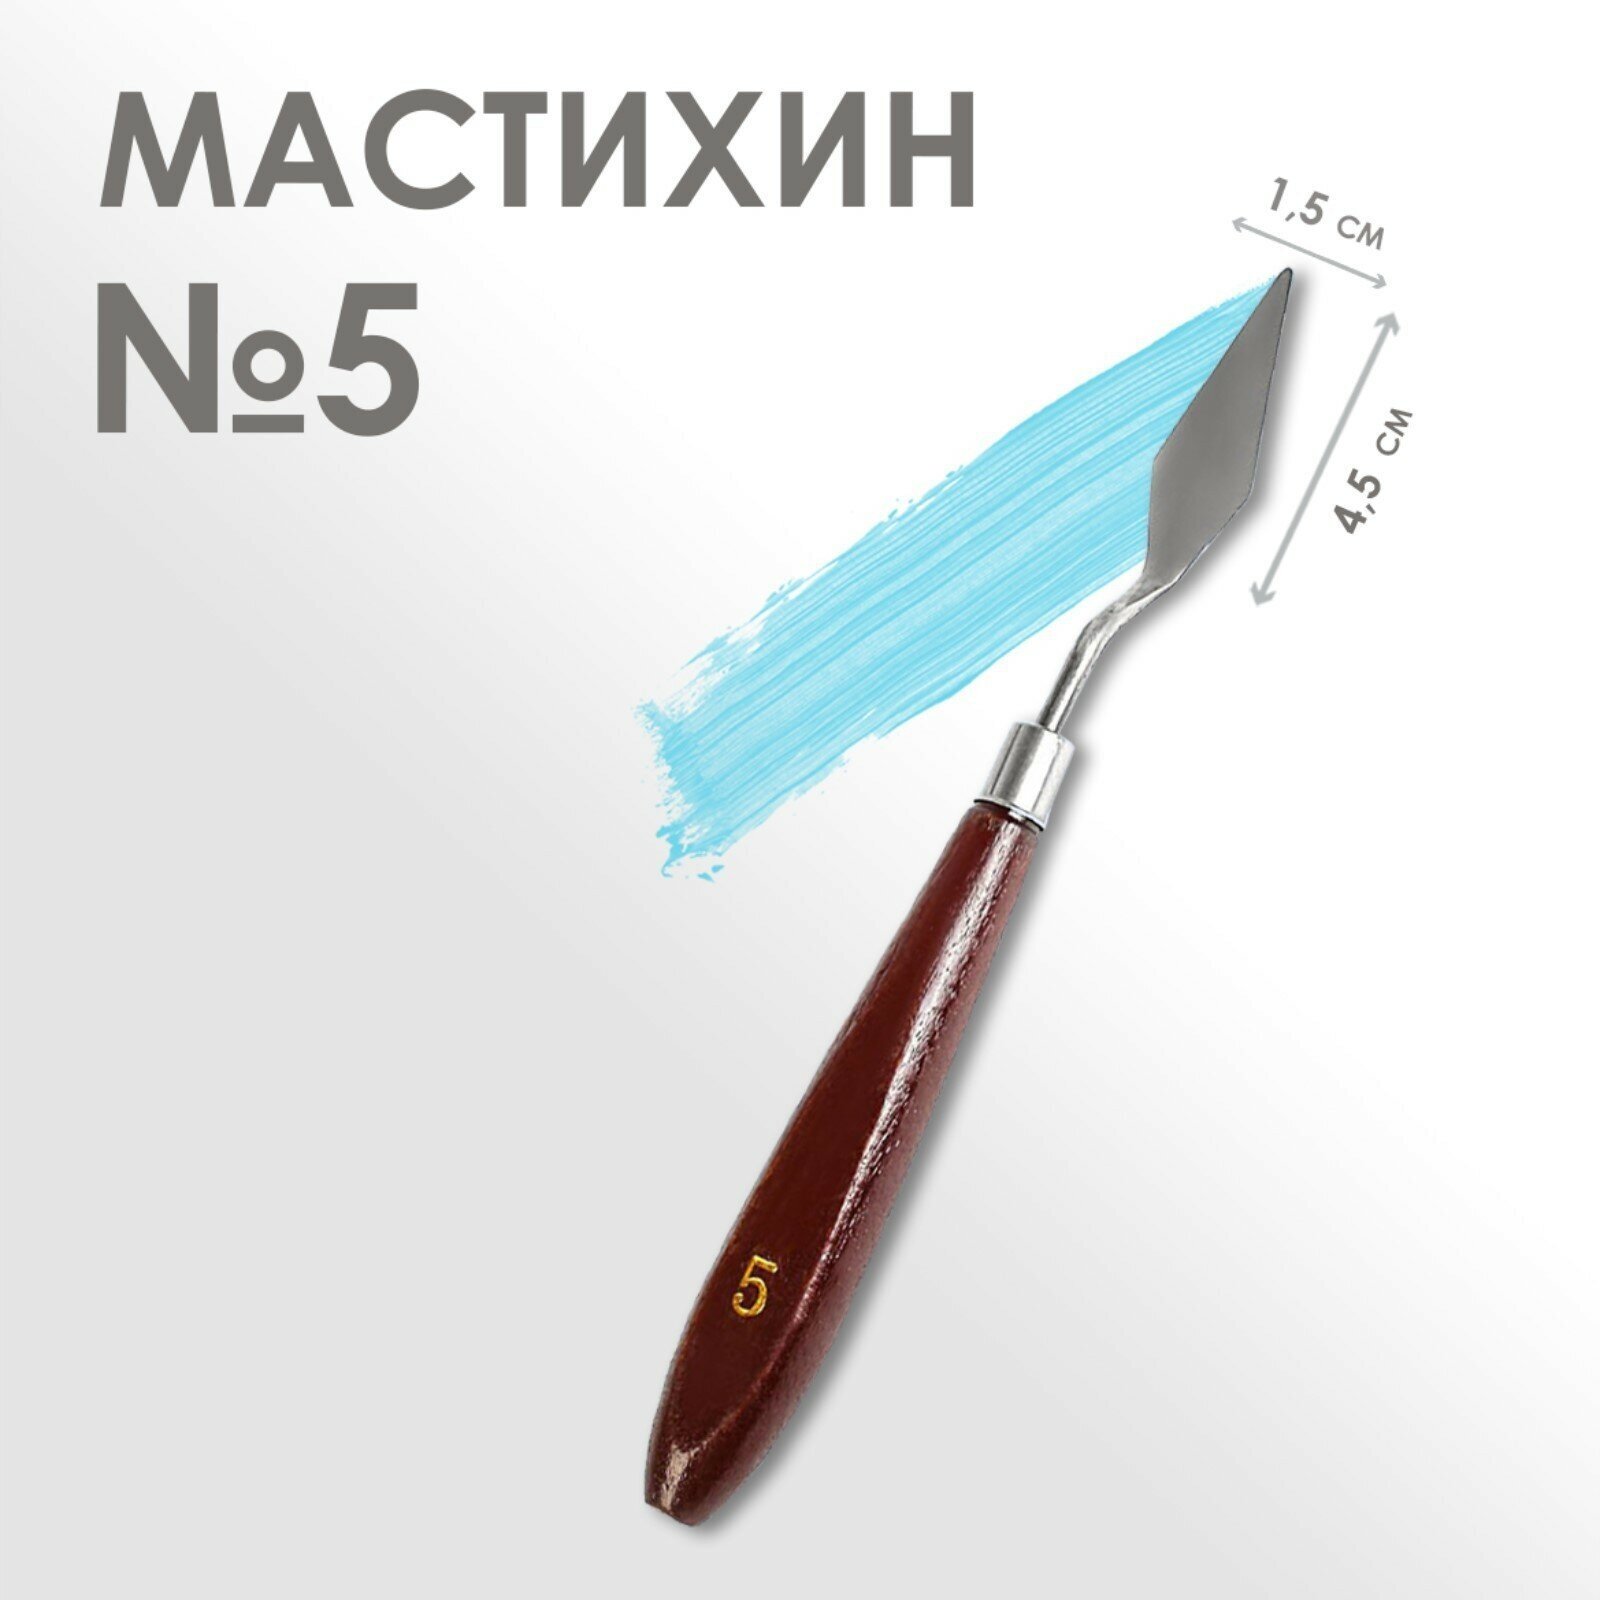 Мастихин № 5, длина 19 см, лопатка 45 х 15 мм (1шт.)